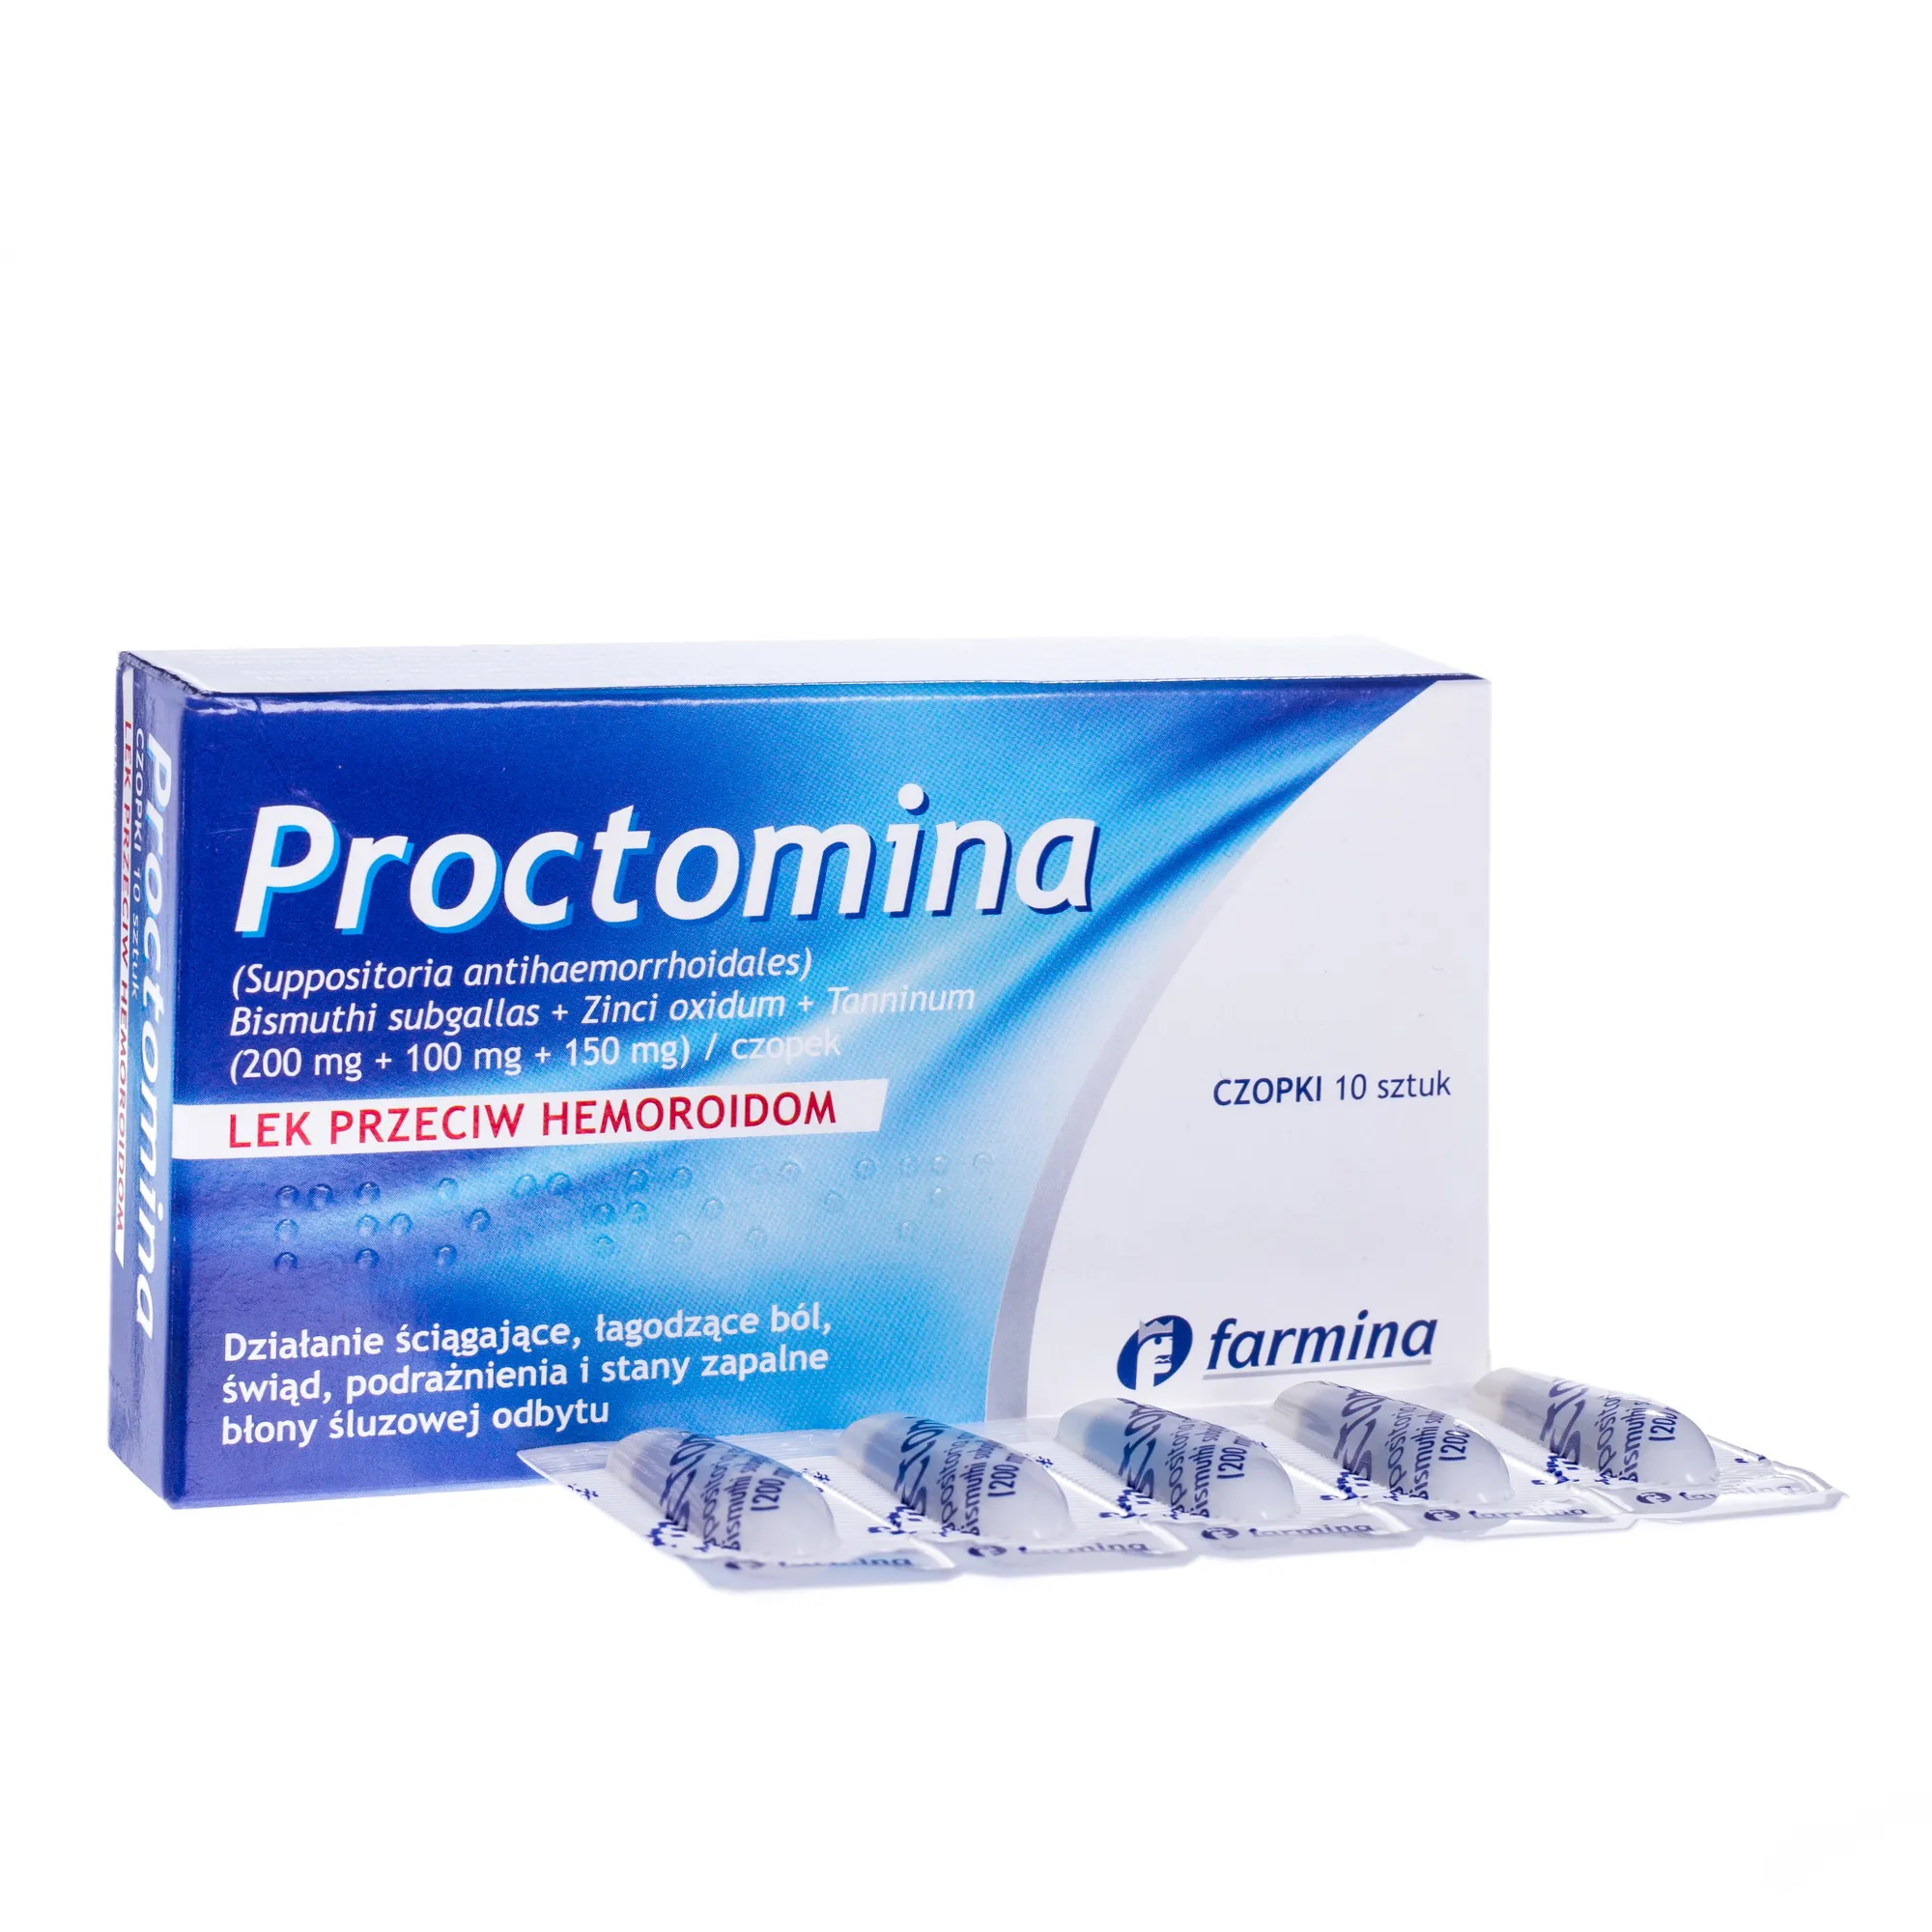 Proctomina, lek przeciw hemoroidom, 10 czopków